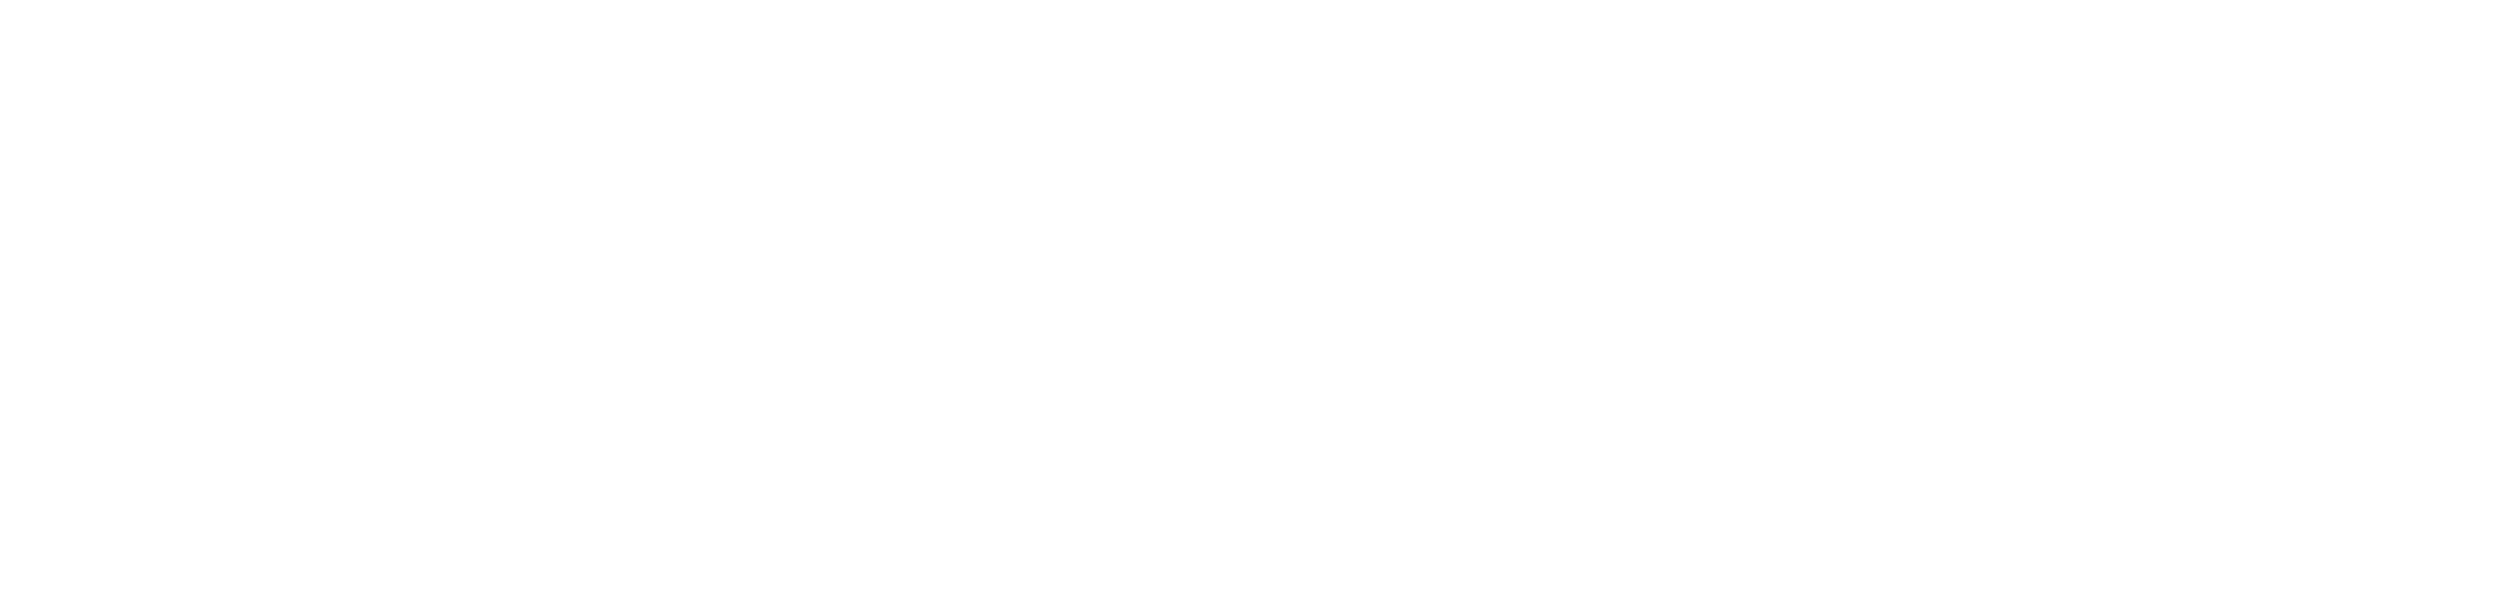 Extreminal Metal Magazine